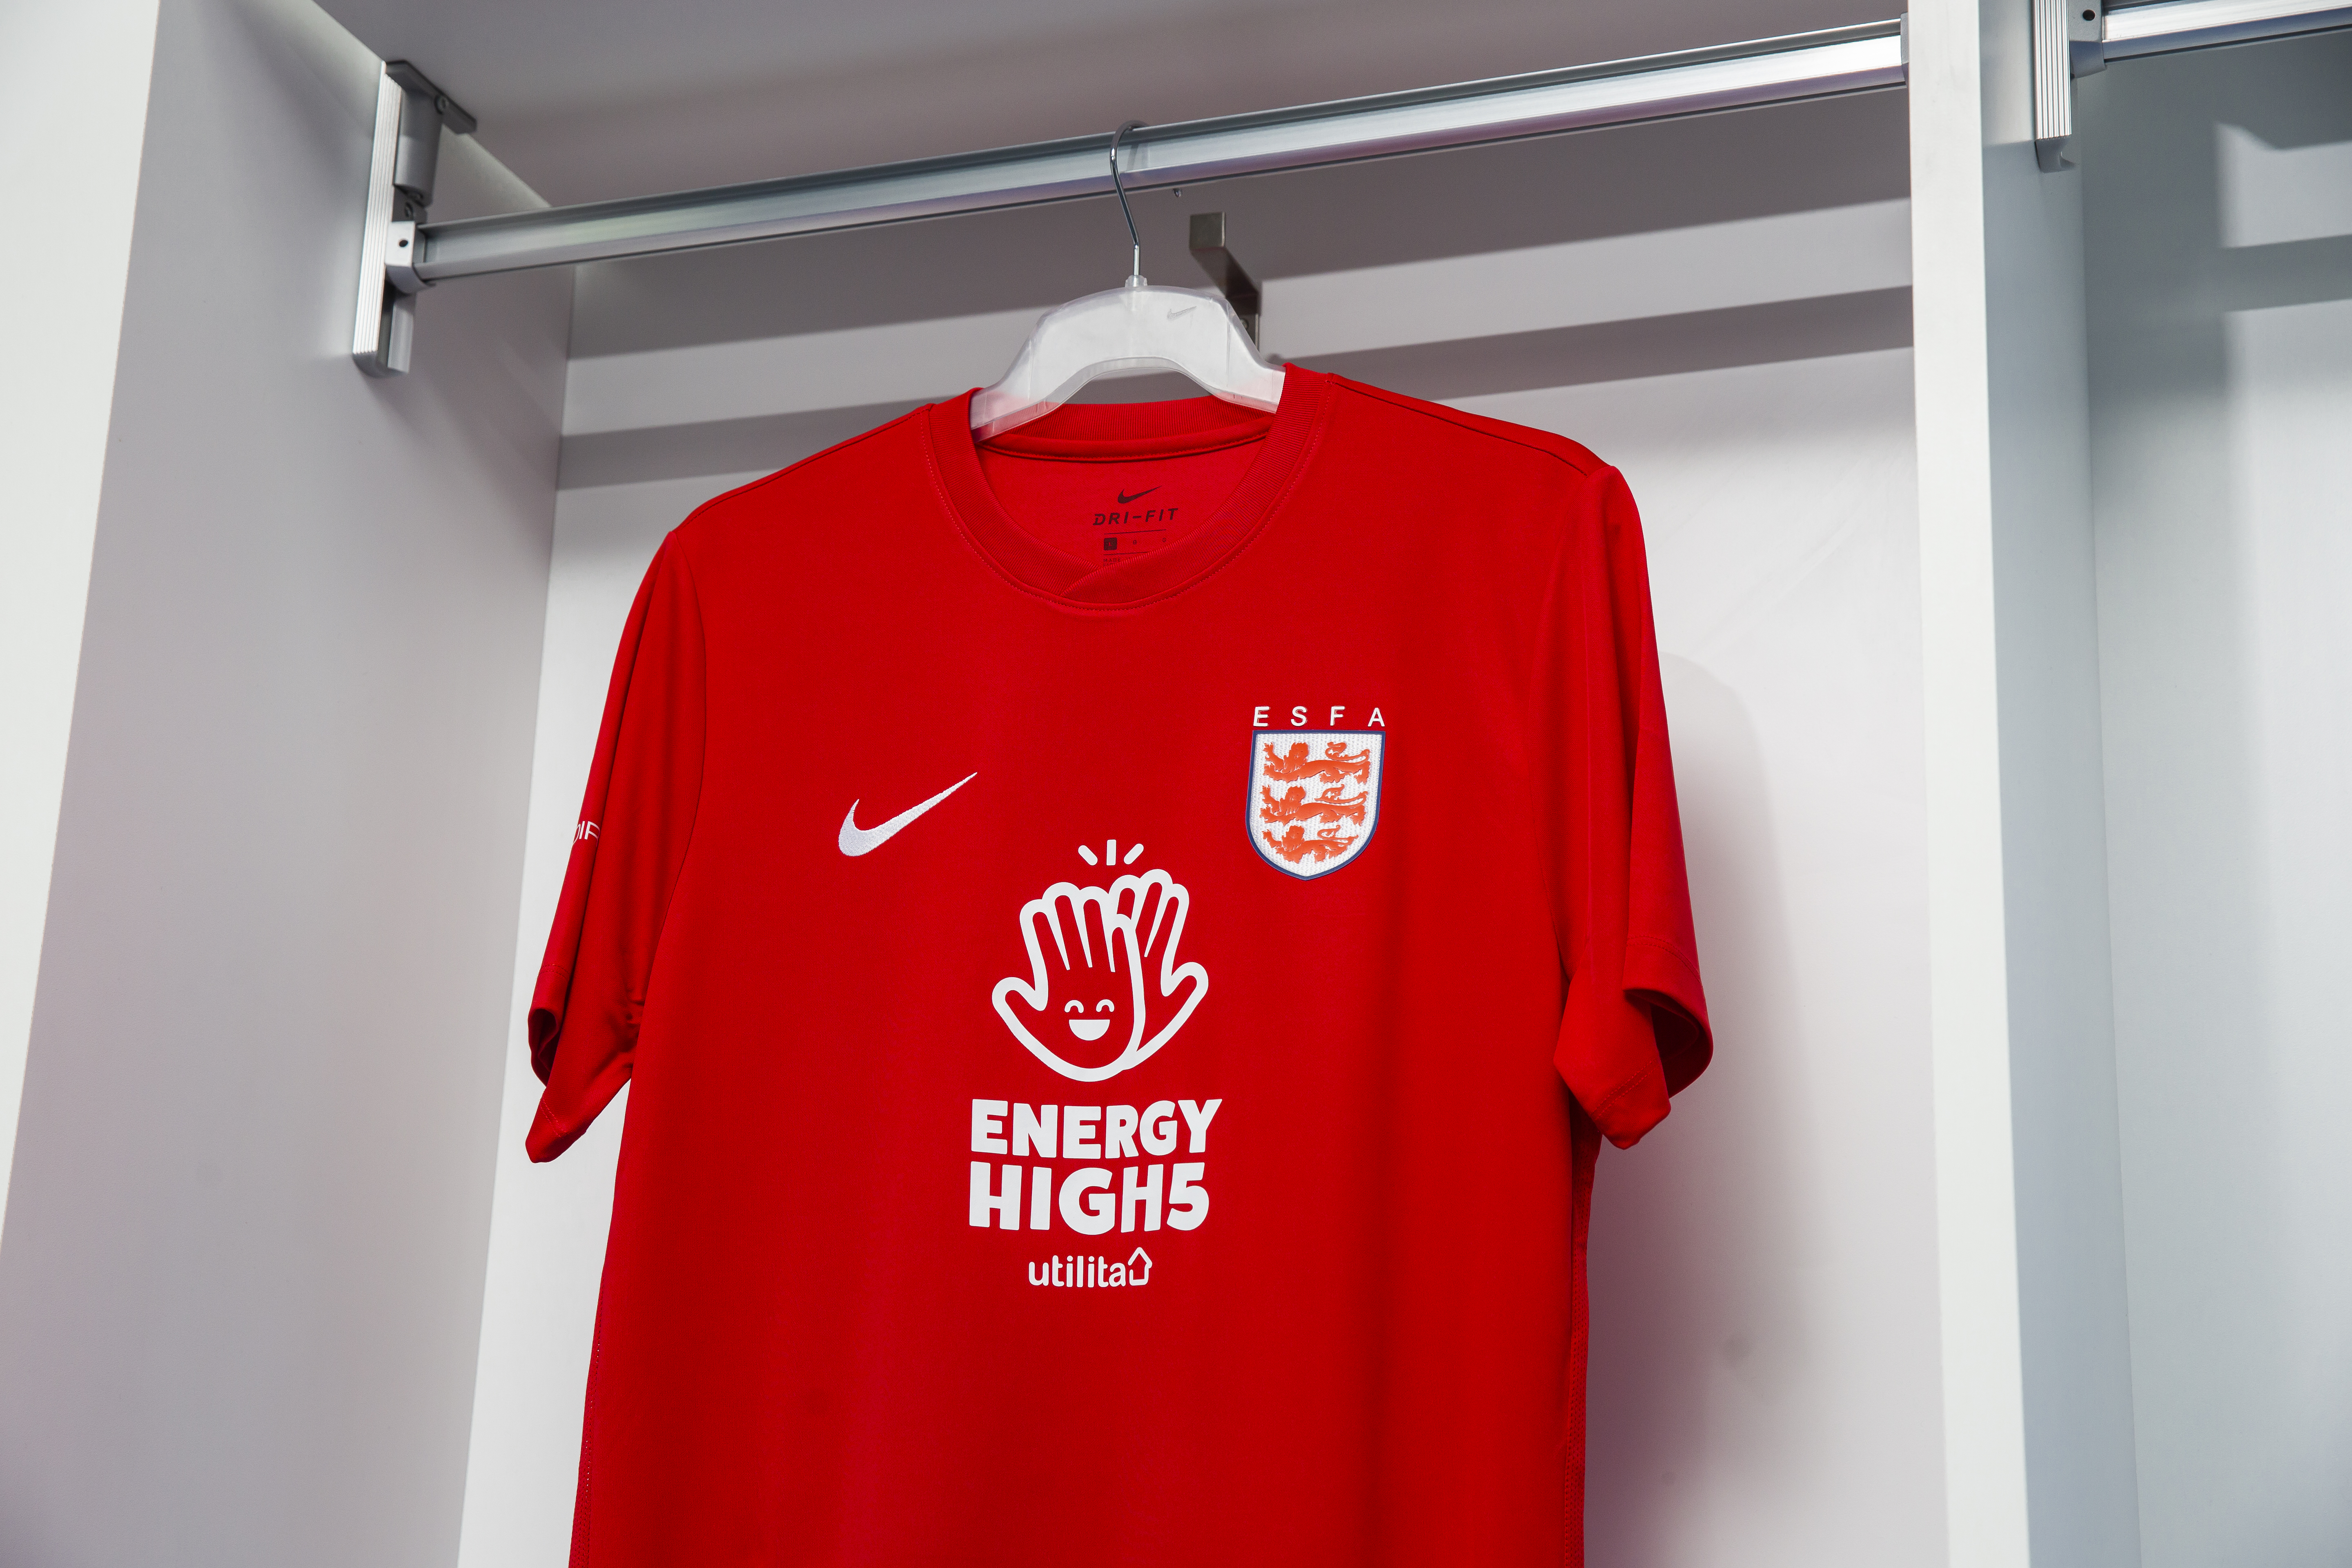 The ESFA England away shirt for 21/22